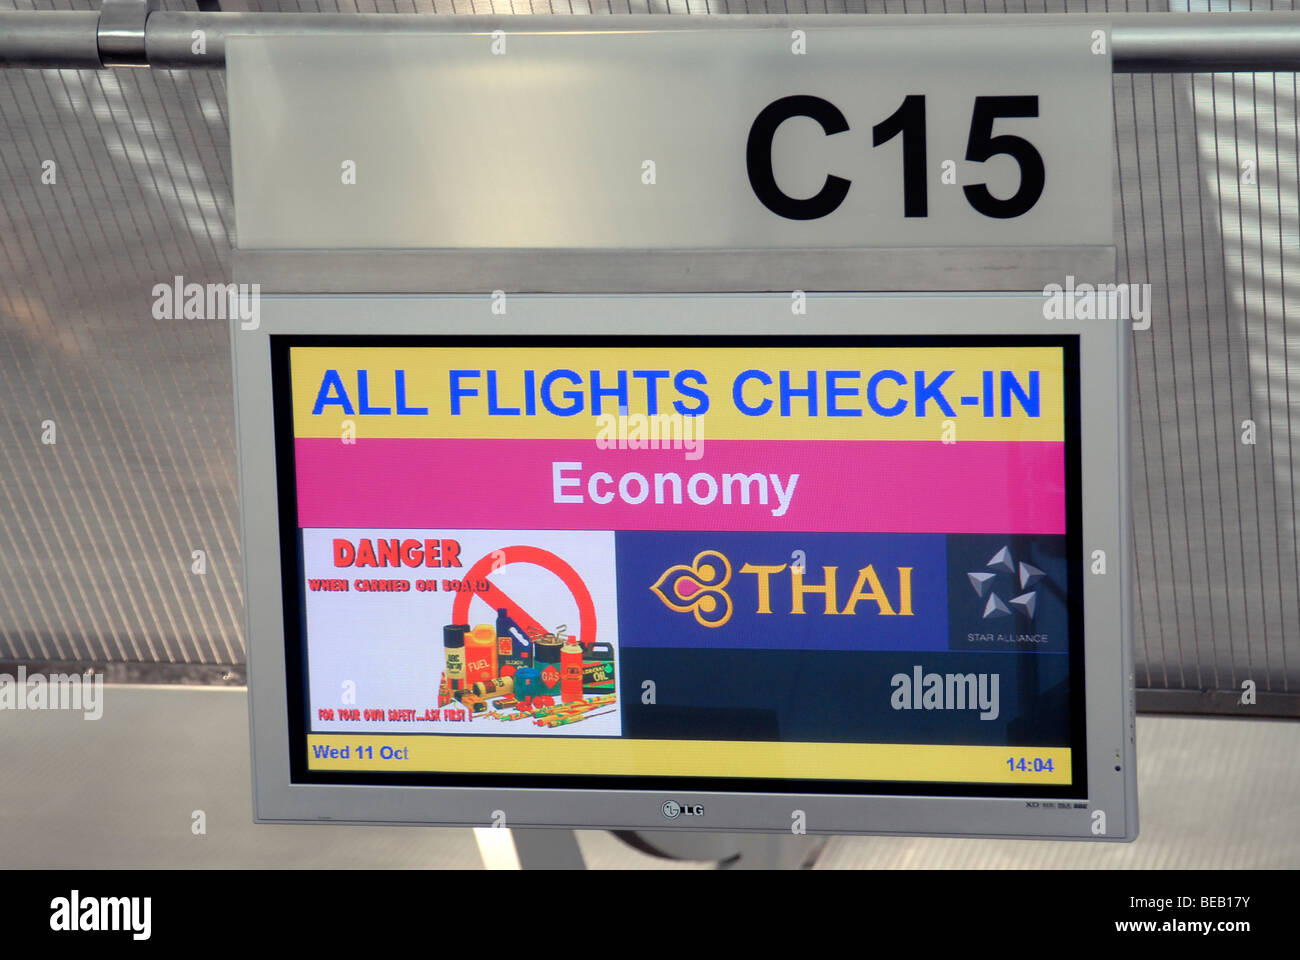 Check-in sign,Bangkok Airport,Thailand Stock Photo